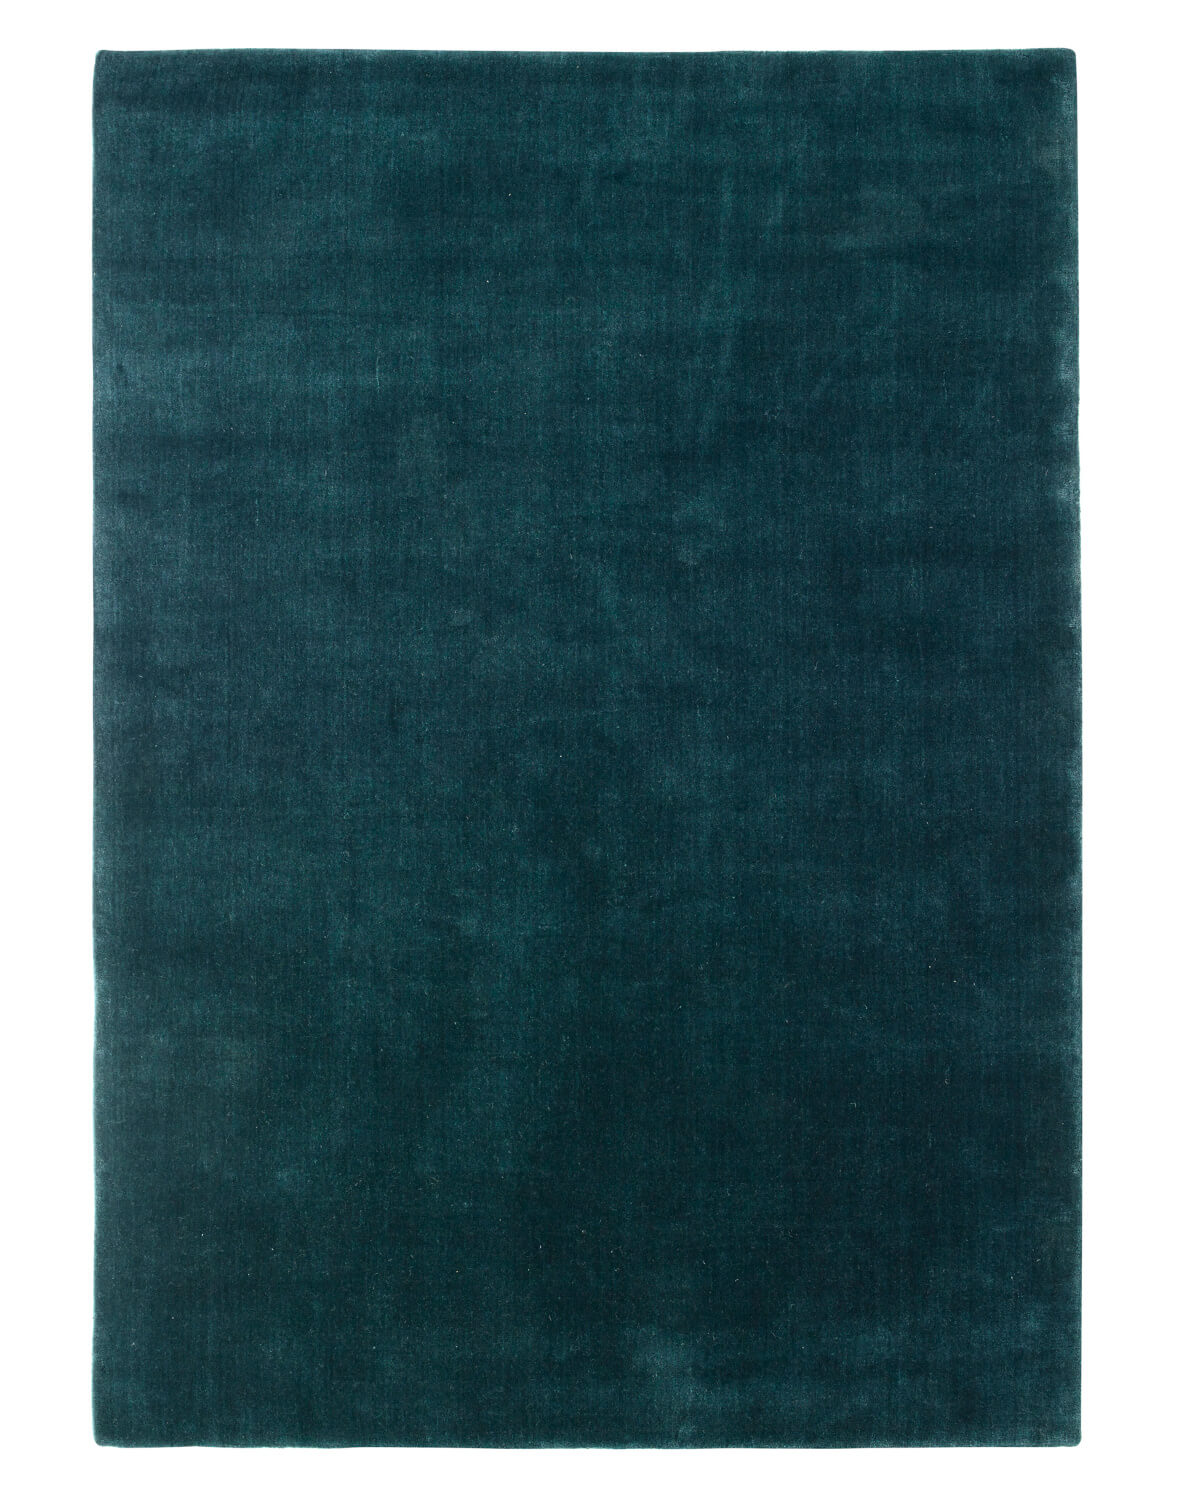 Earth Teppich, 170 x 240 cm, moss green